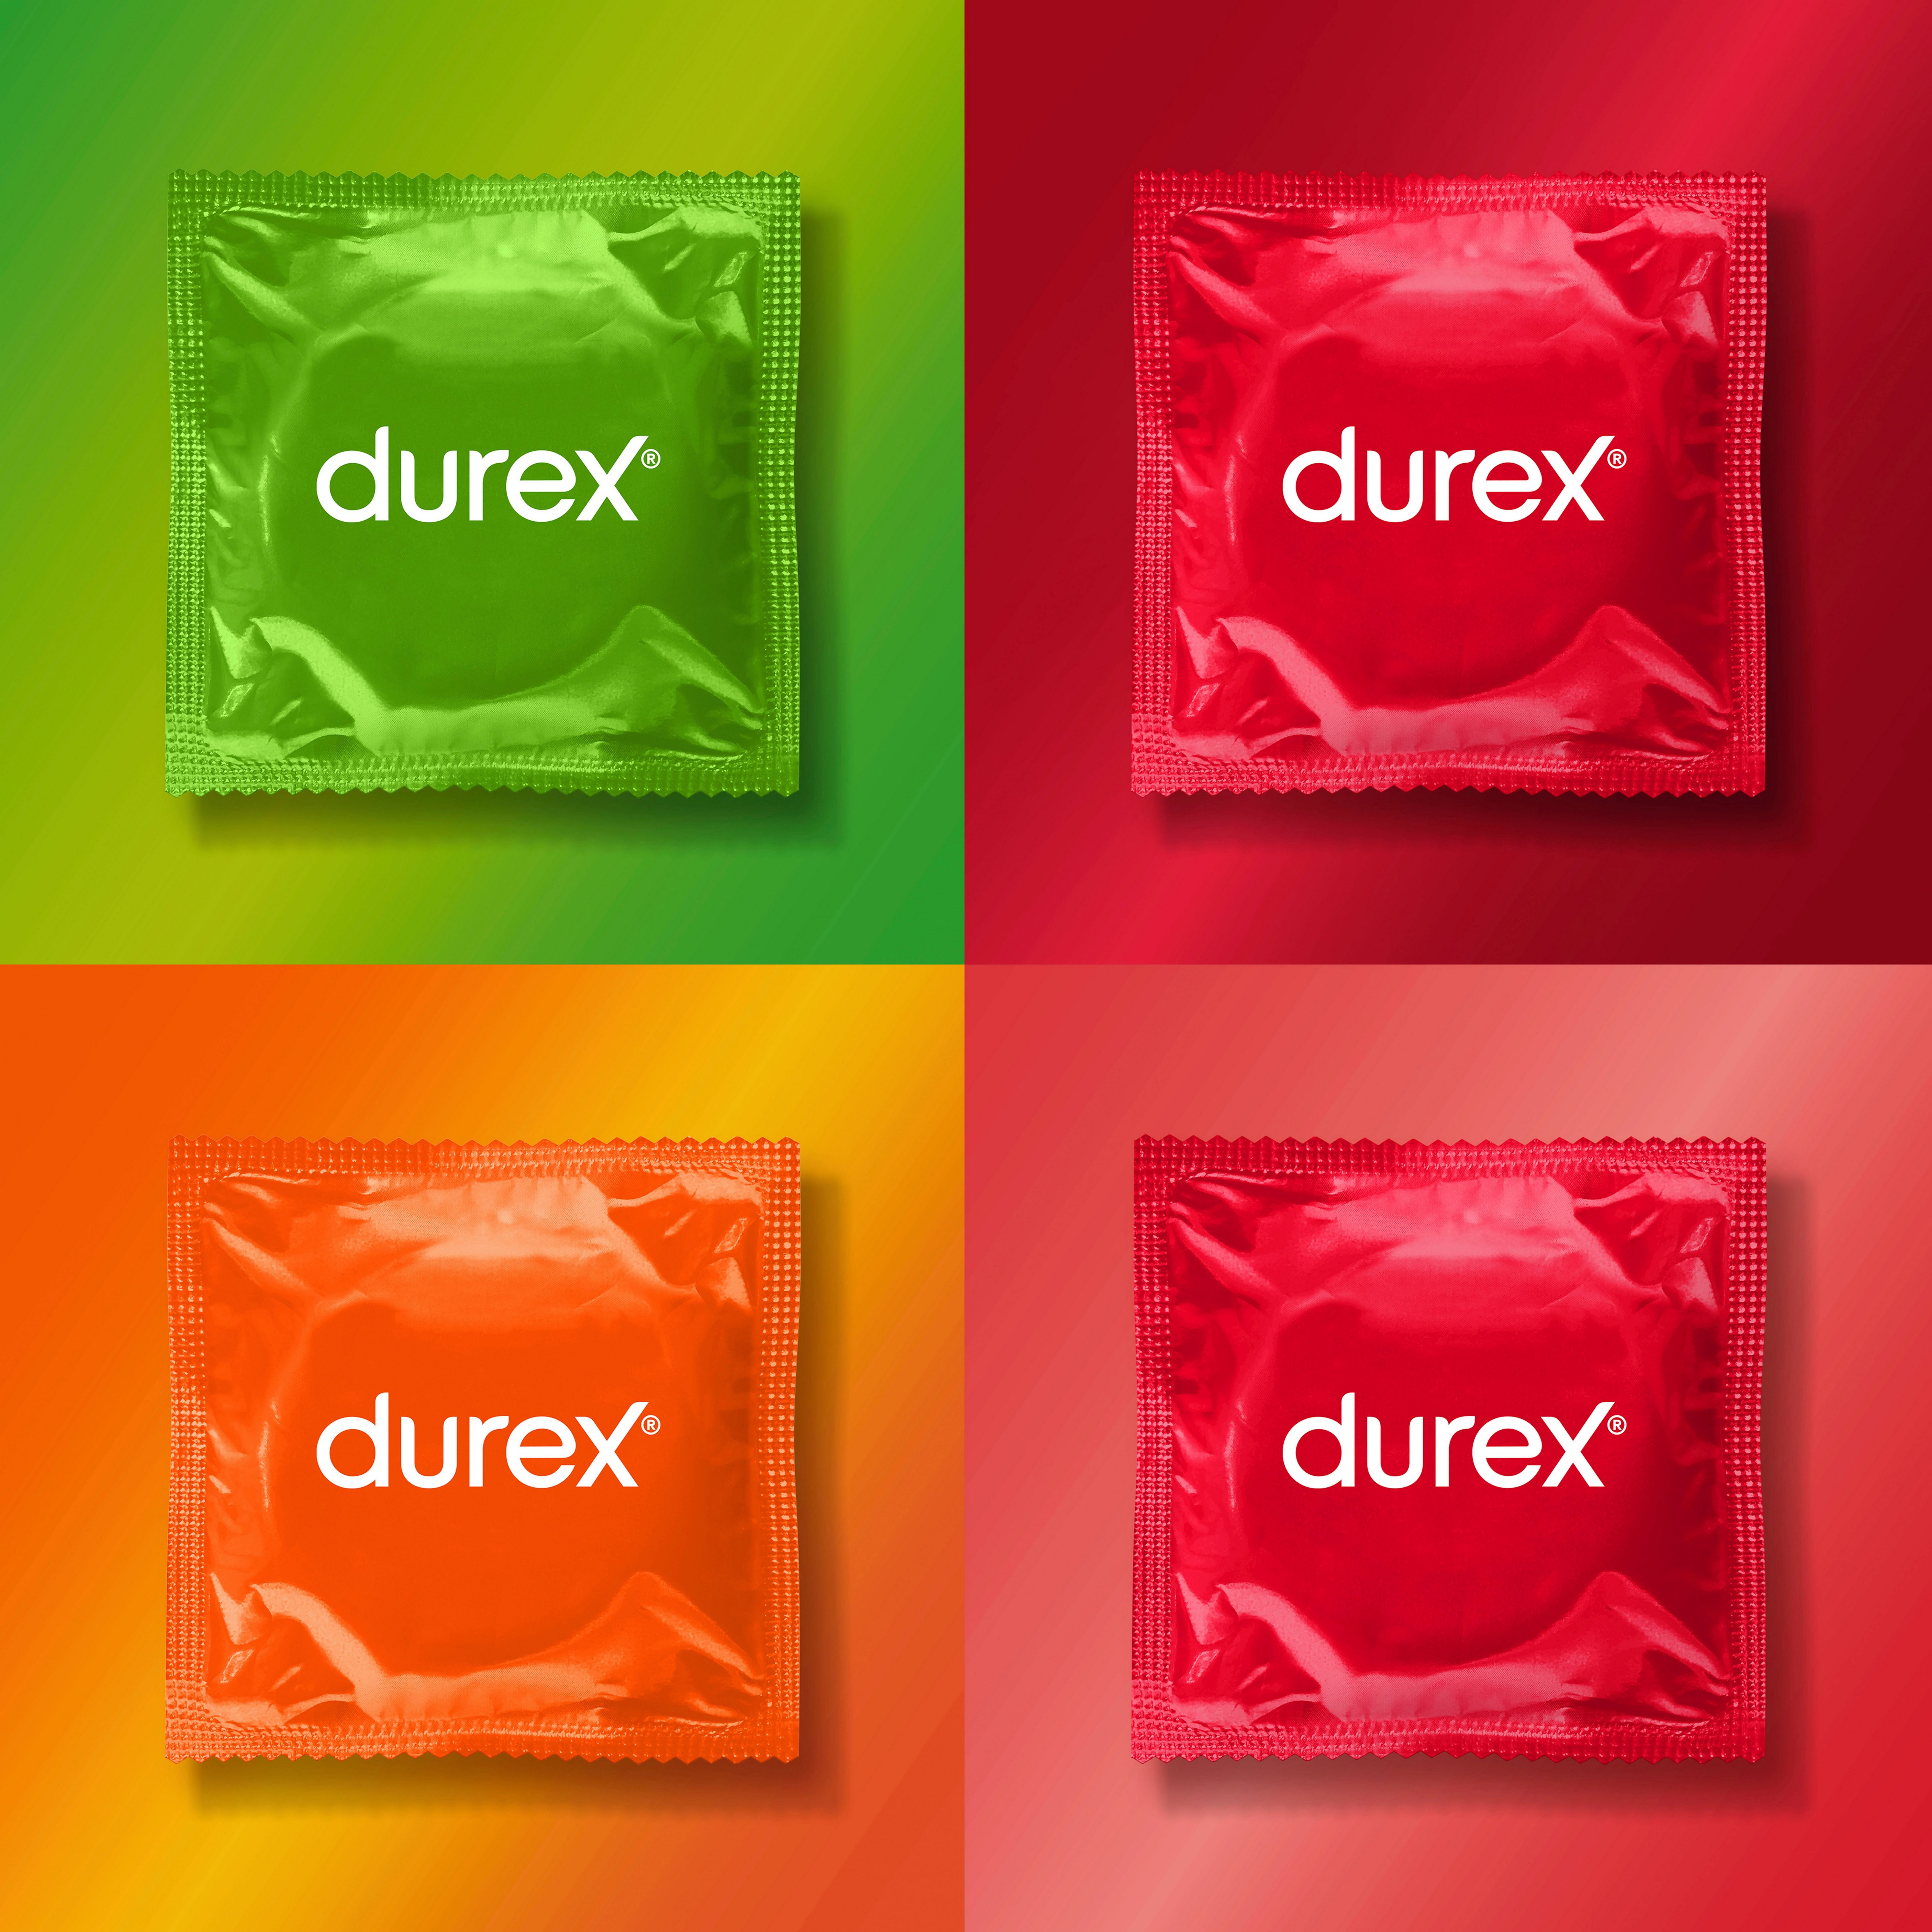 durex Kondome Durex Überrasch Mich St. 30 Packung